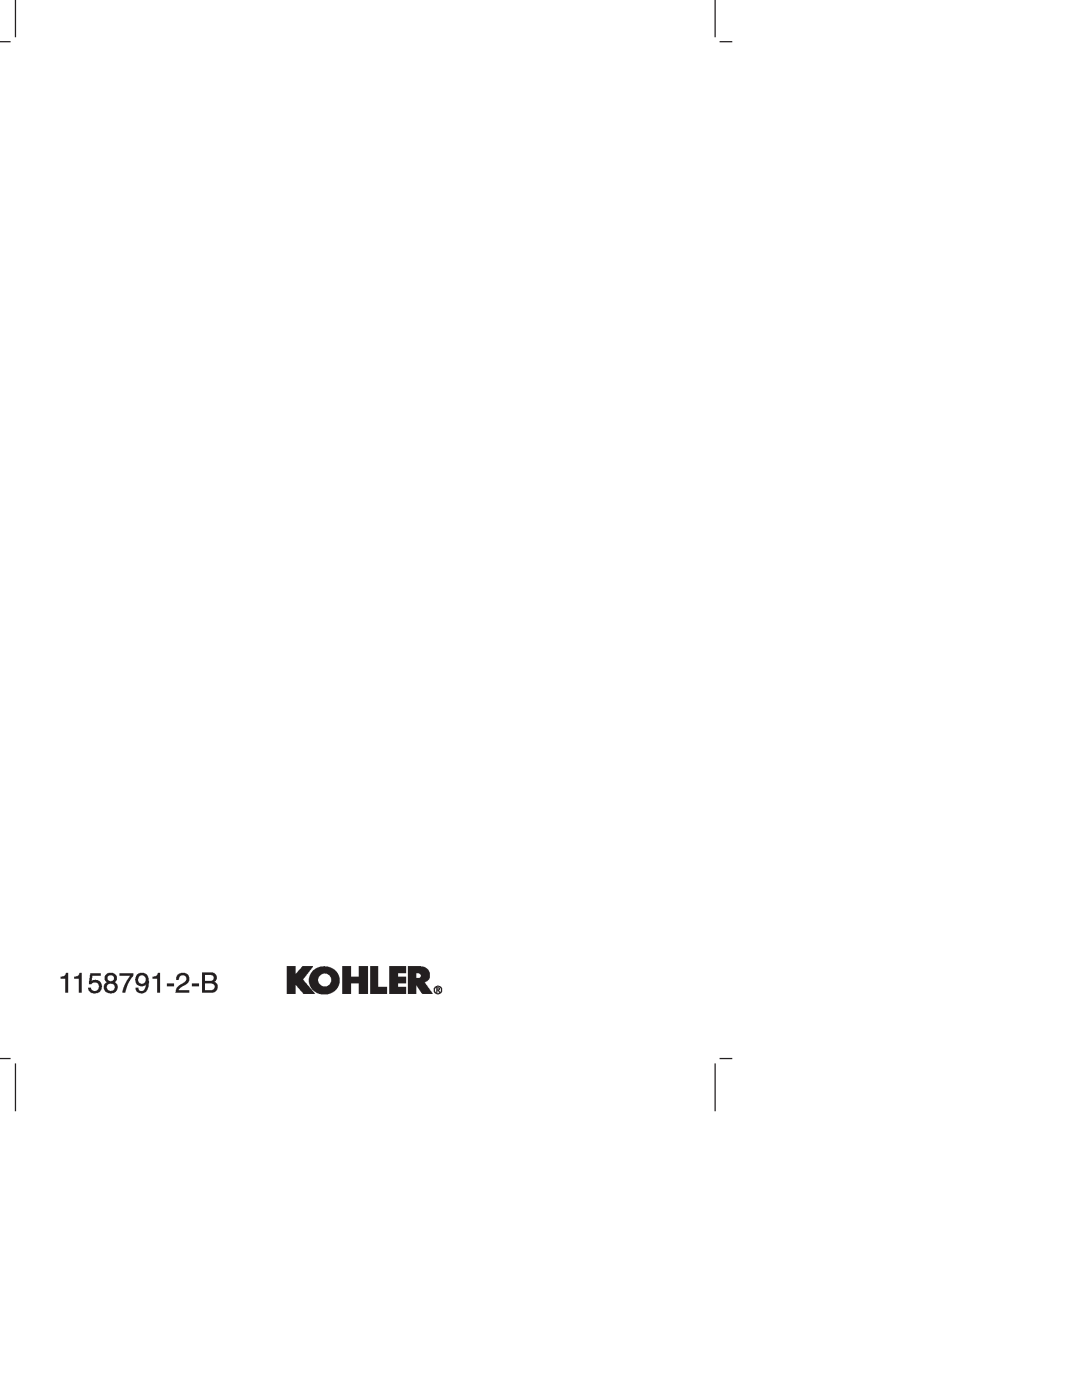 Kohler K-T 45115 manual 1158791-2-B 